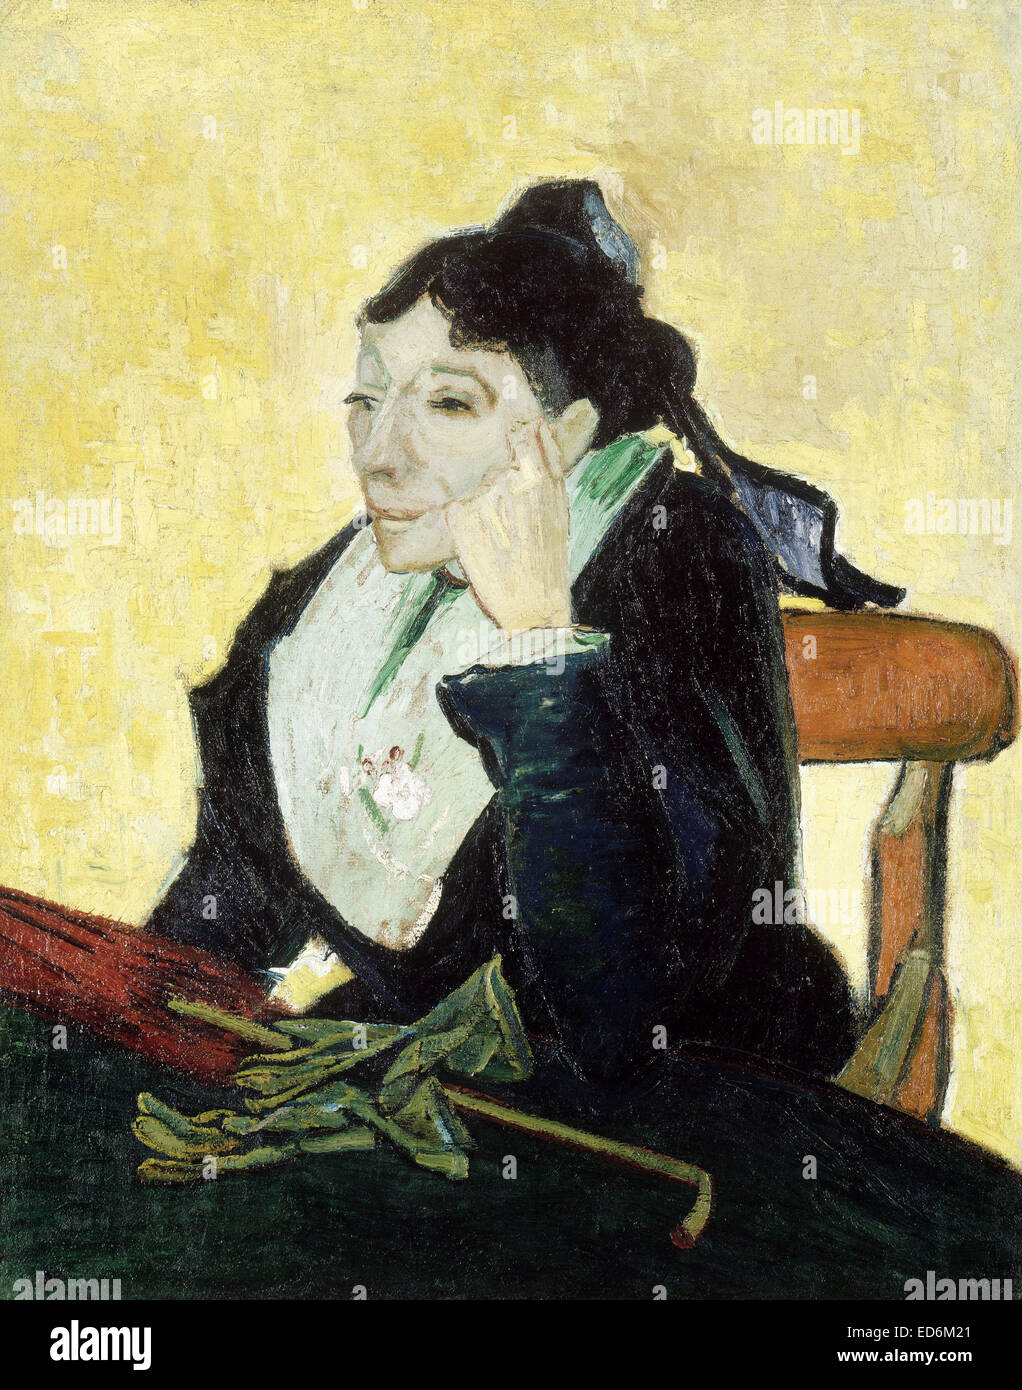 Vincent van Gogh, l'Arlésienne 1888 Huile sur toile. Musée d'Orsay, Paris, France. Banque D'Images